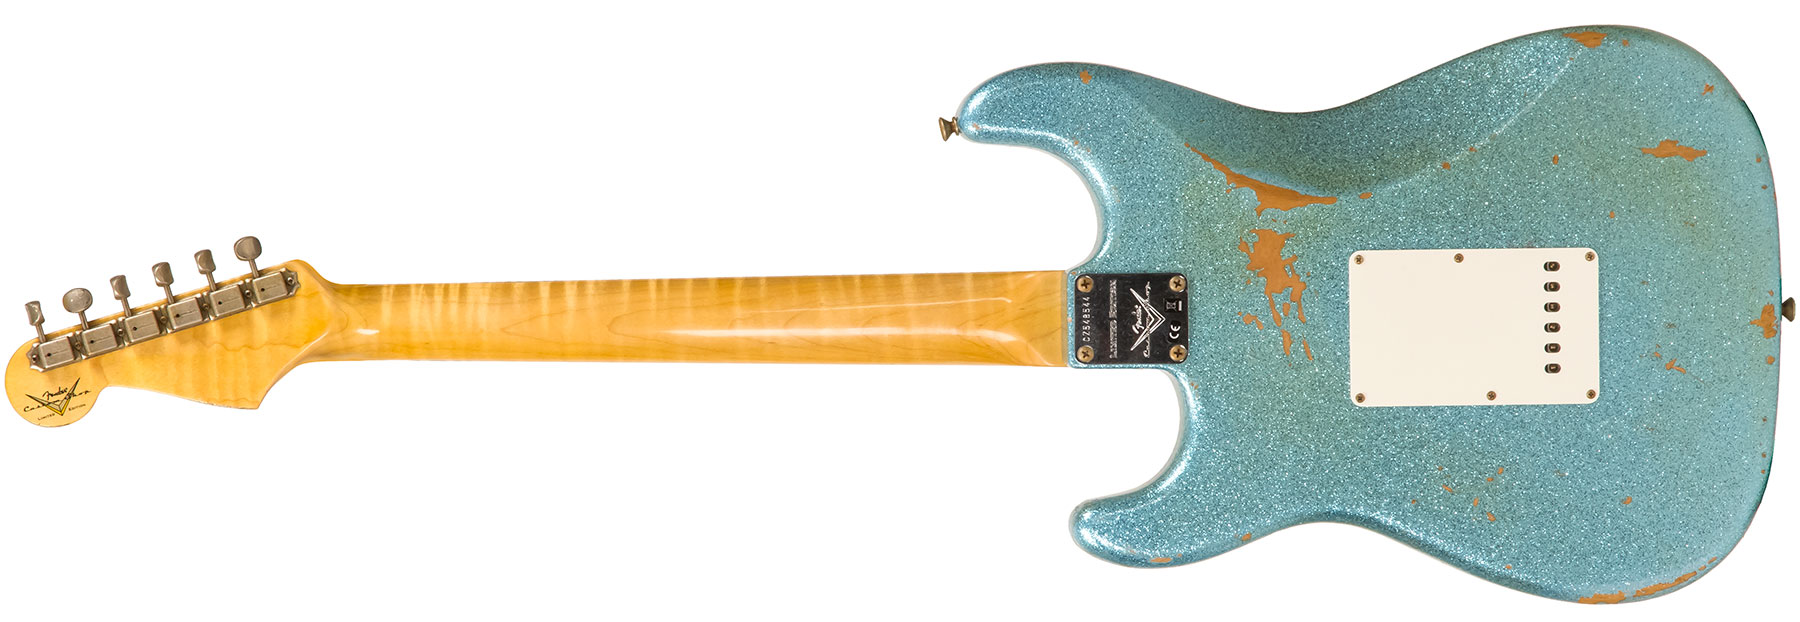 Fender Custom Shop Strat 1965 Ltd Usa Rw #cz548544 - Relic Daphne Blue Sparkle - Guitare Électrique Forme Str - Variation 1